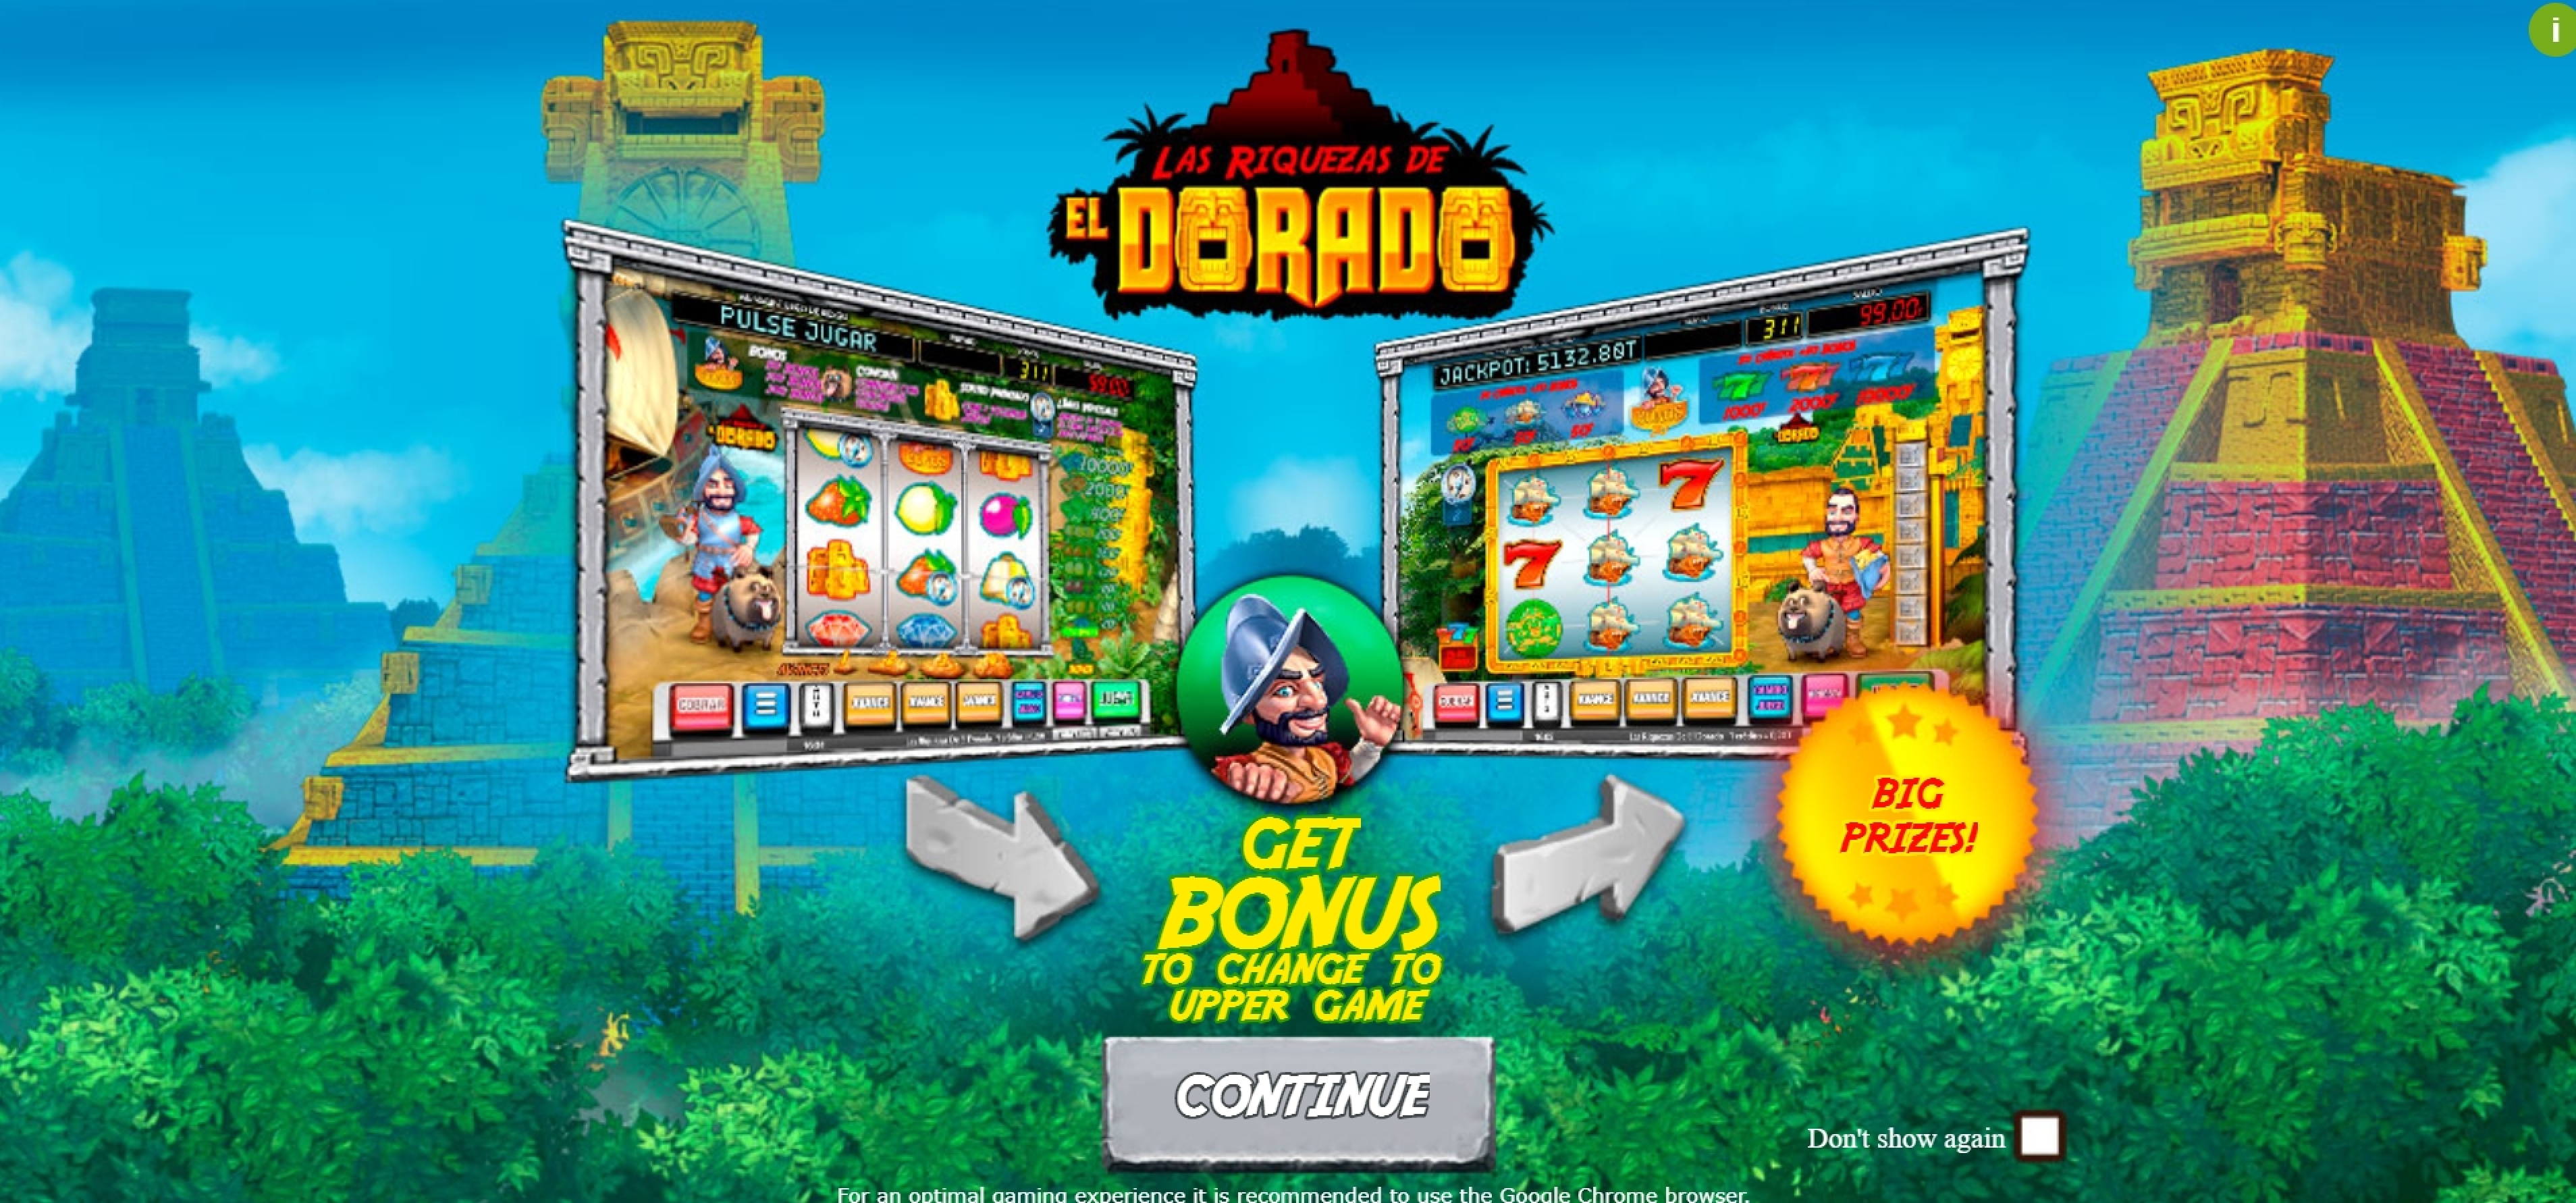 Play Las Riquezas De El Dorado Free Casino Slot Game by MGA